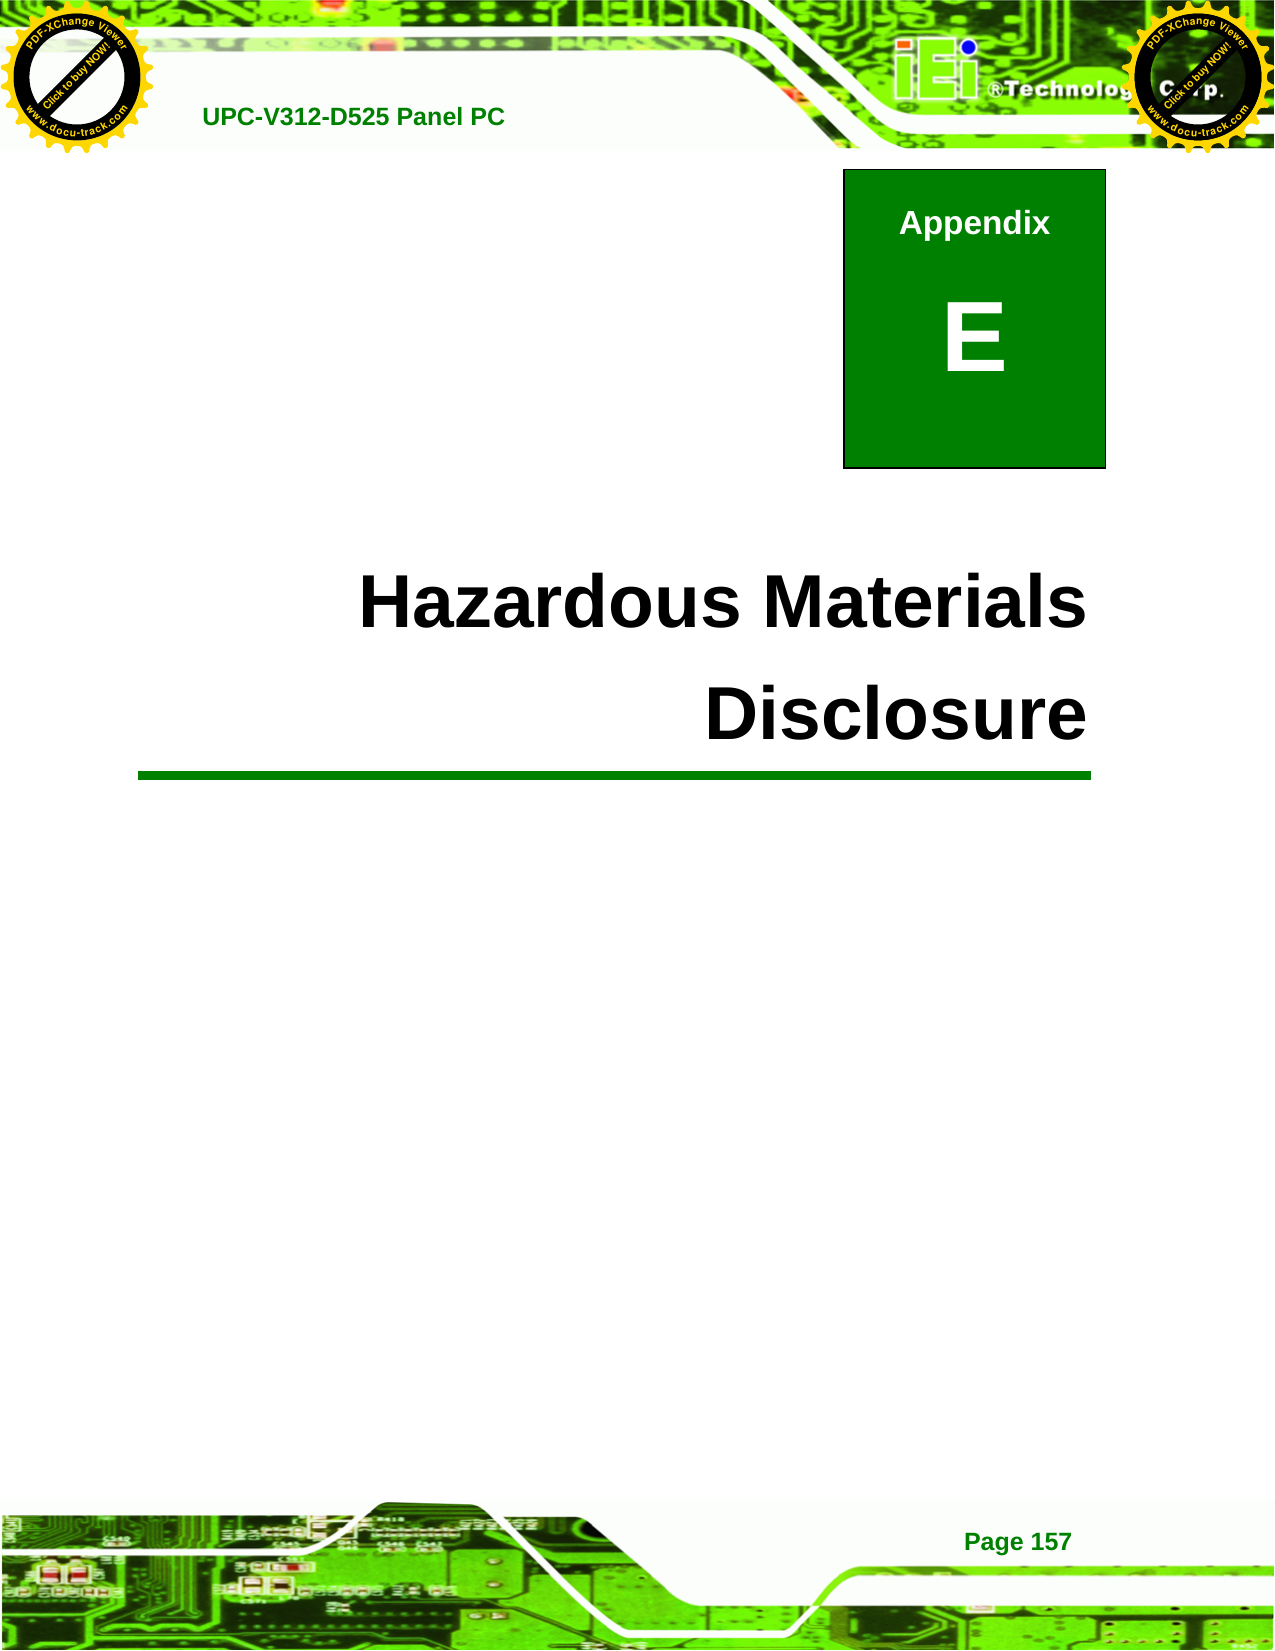   UPC-V312-D525 Panel PC Page 157          E Hazardous Materials Disclosure Appendix E Click to buy NOW!PDF-XChange Viewerwww.docu-track.comClick to buy NOW!PDF-XChange Viewerwww.docu-track.com